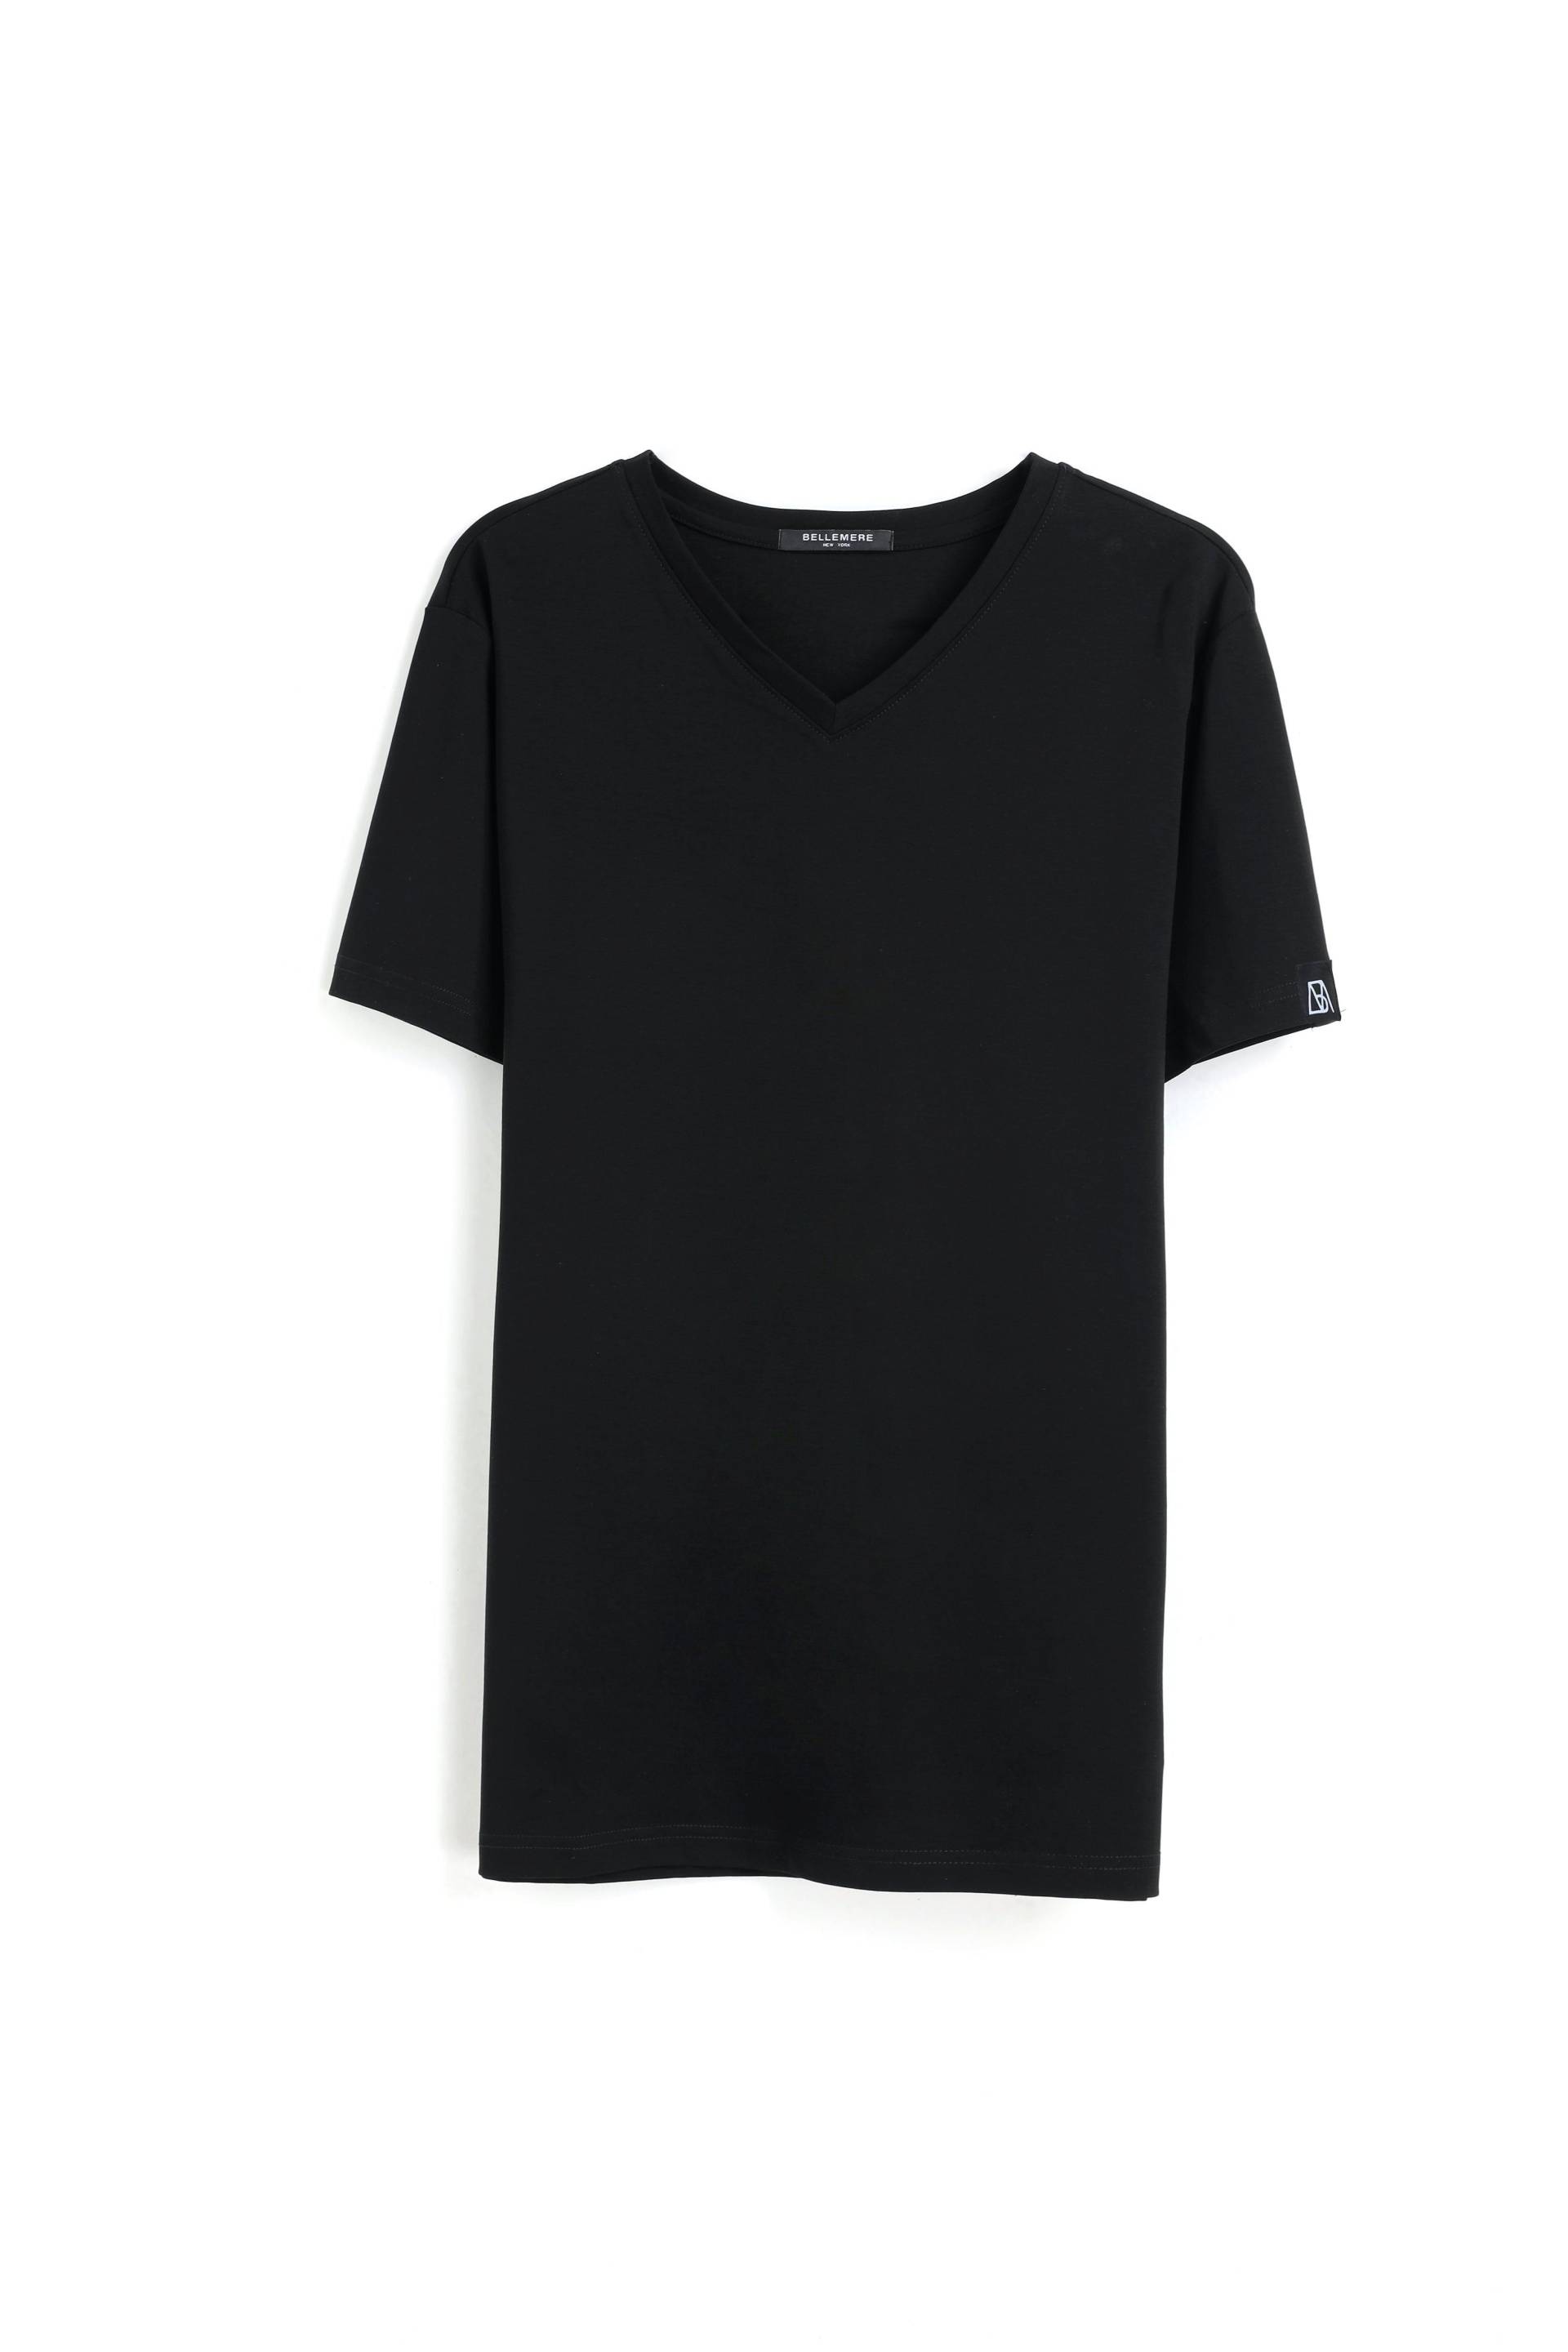 Grandioses T-shirt Aus Merzerisierter Baumwolle Mit V-ausschnitt Herren Schwarz M von Bellemere New York